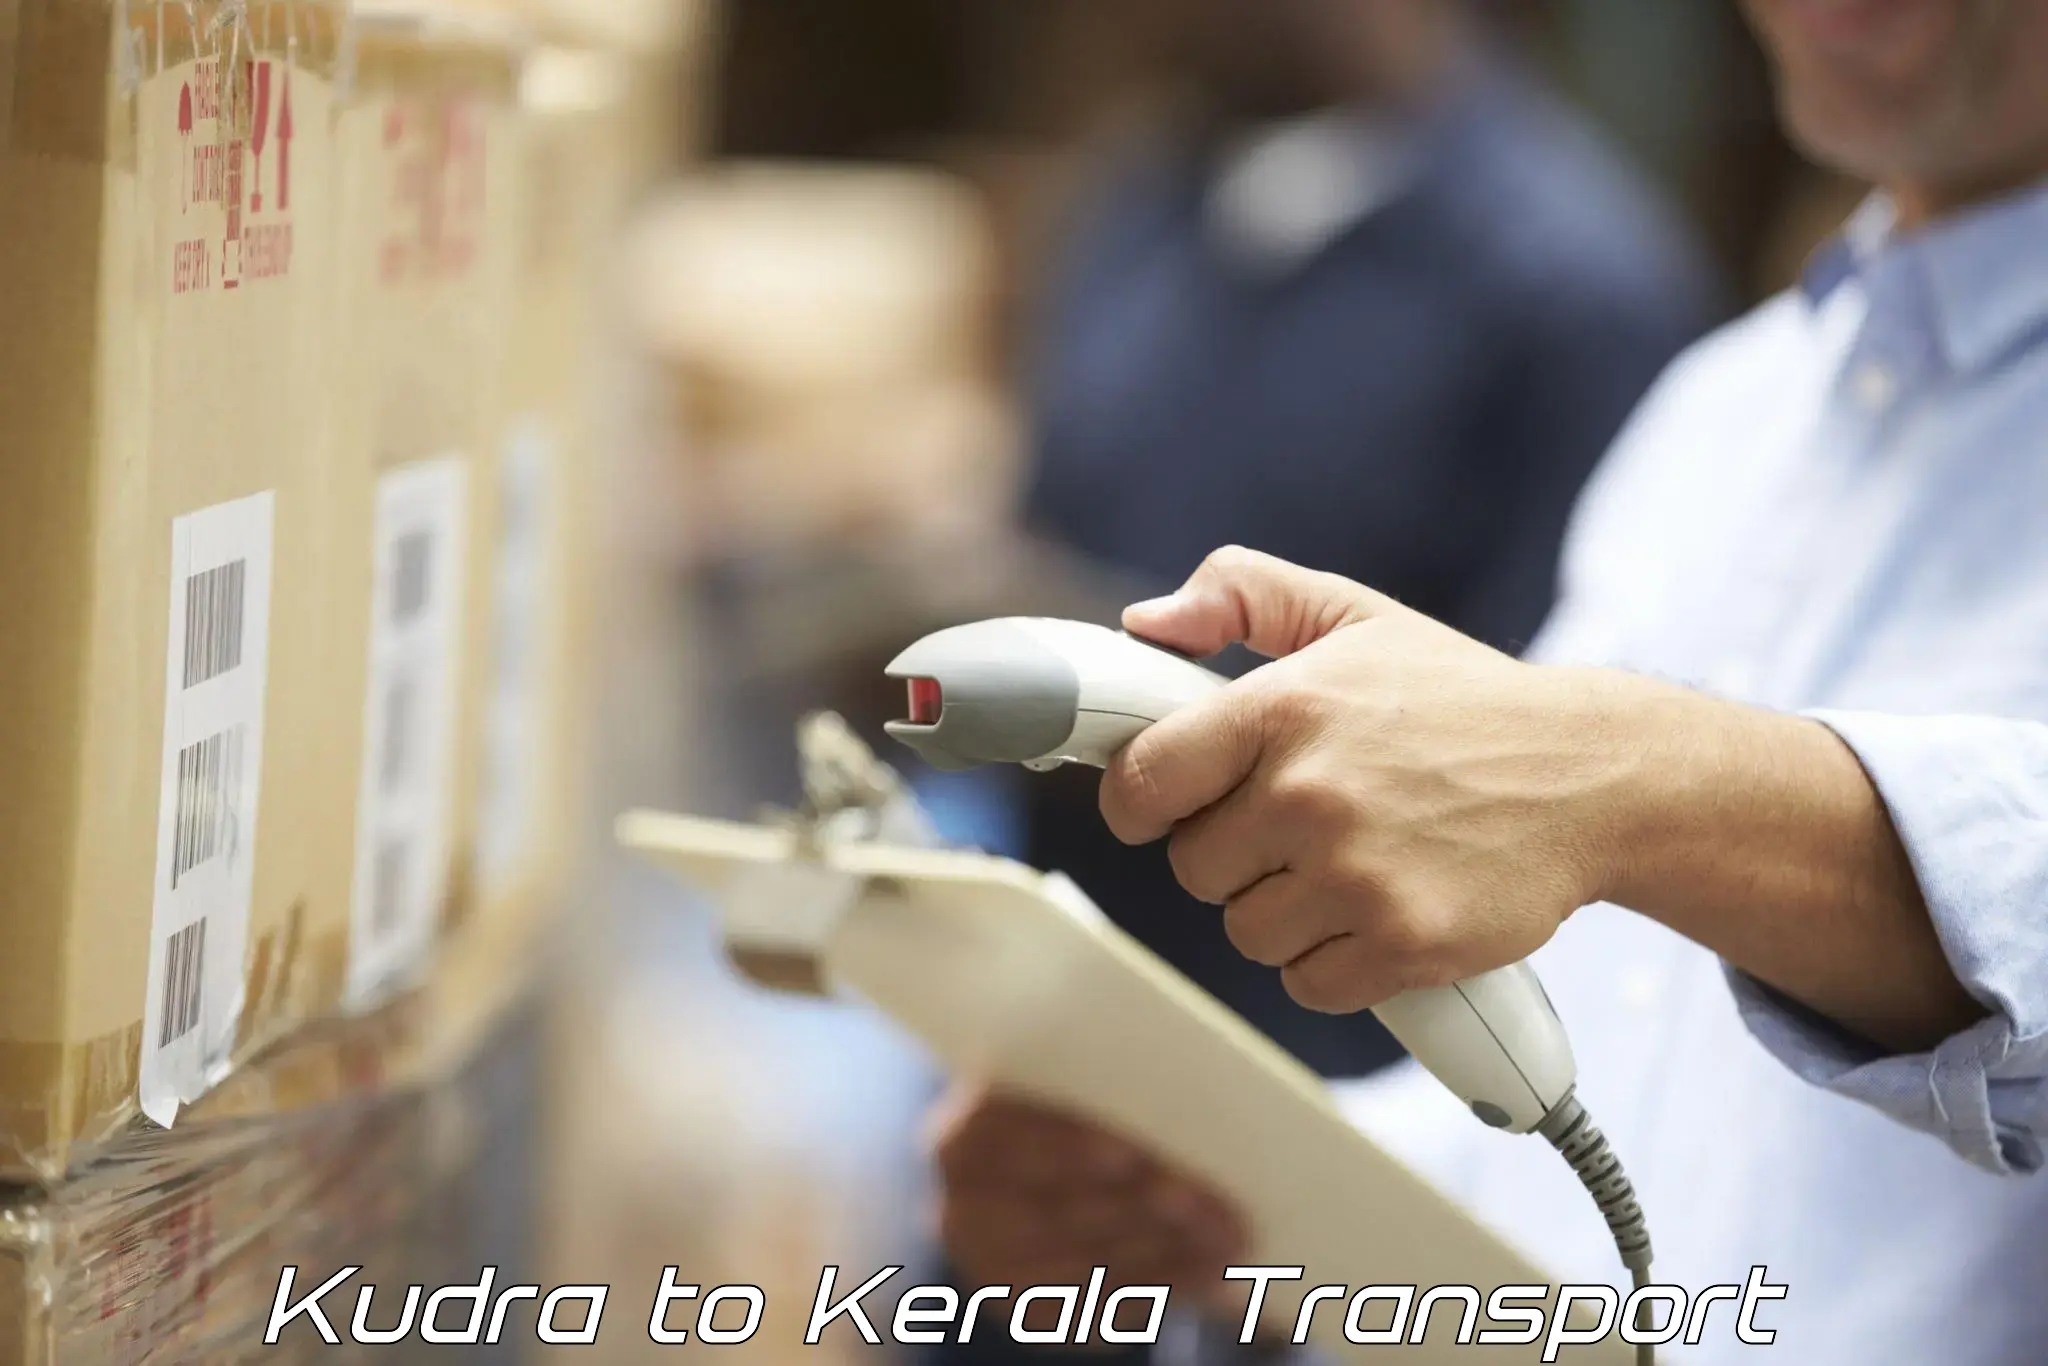 Daily transport service Kudra to Edappal